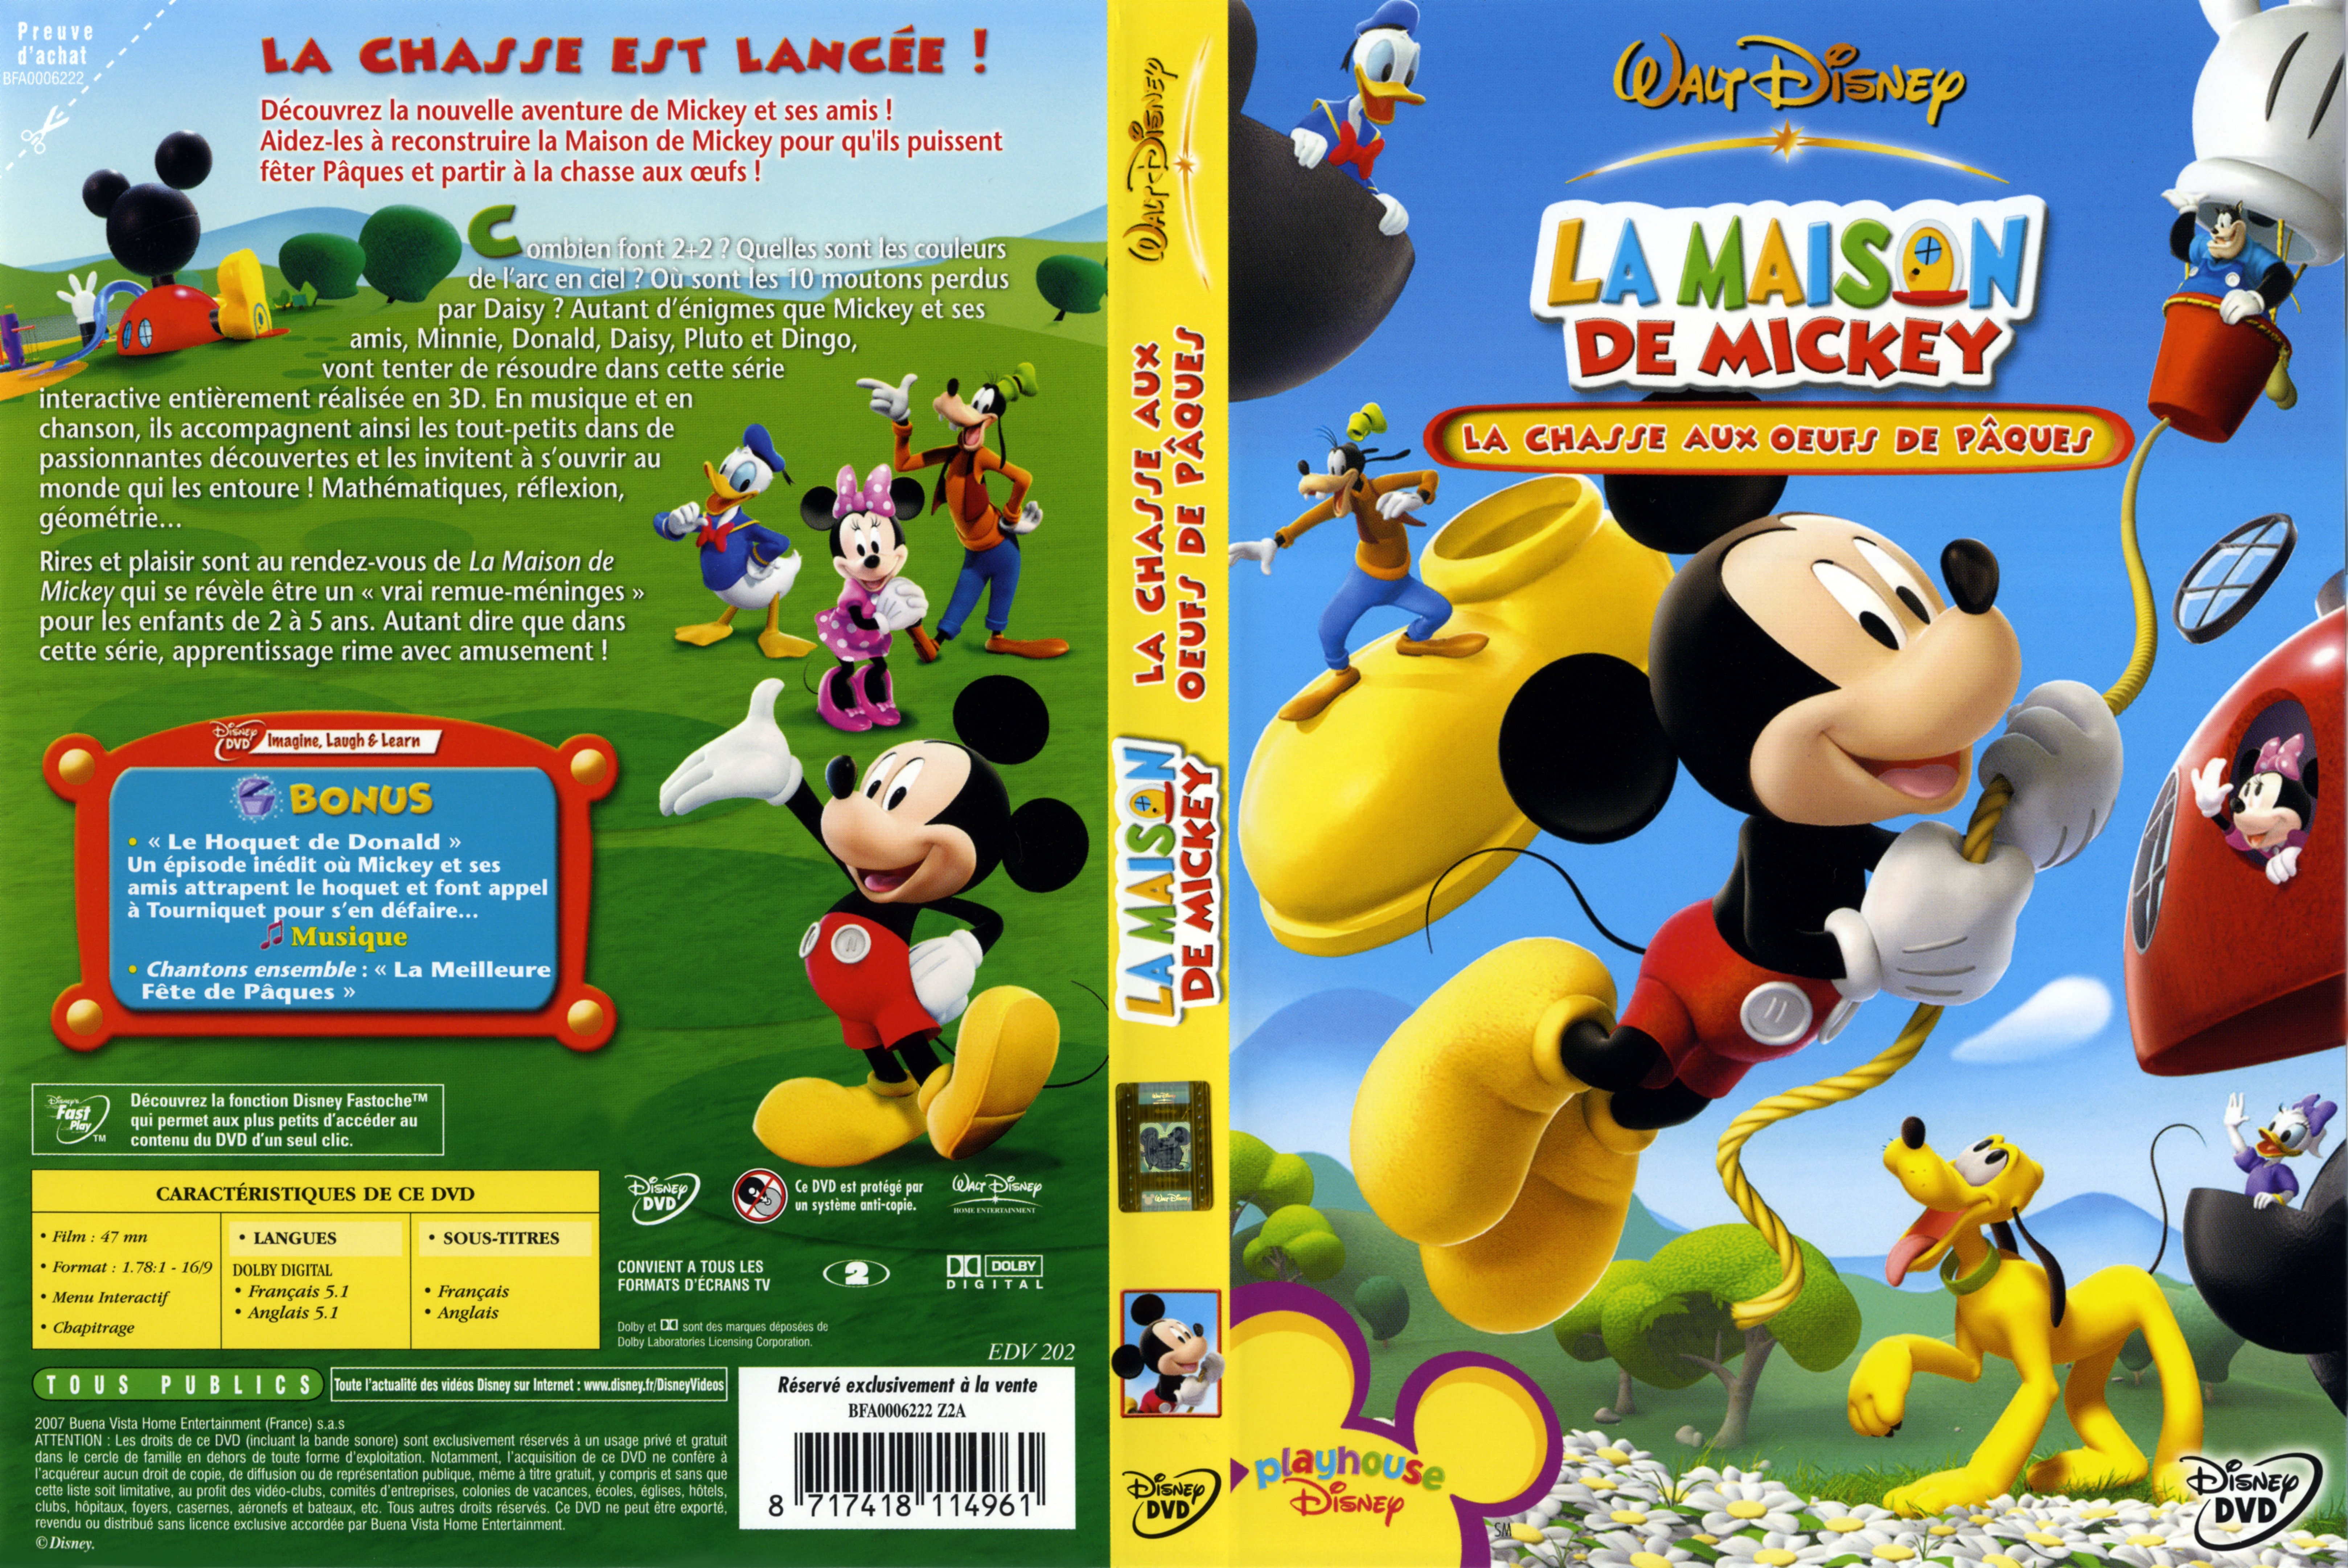 Jaquette DVD La maison de Mickey - la chasse aux oeufs de paque